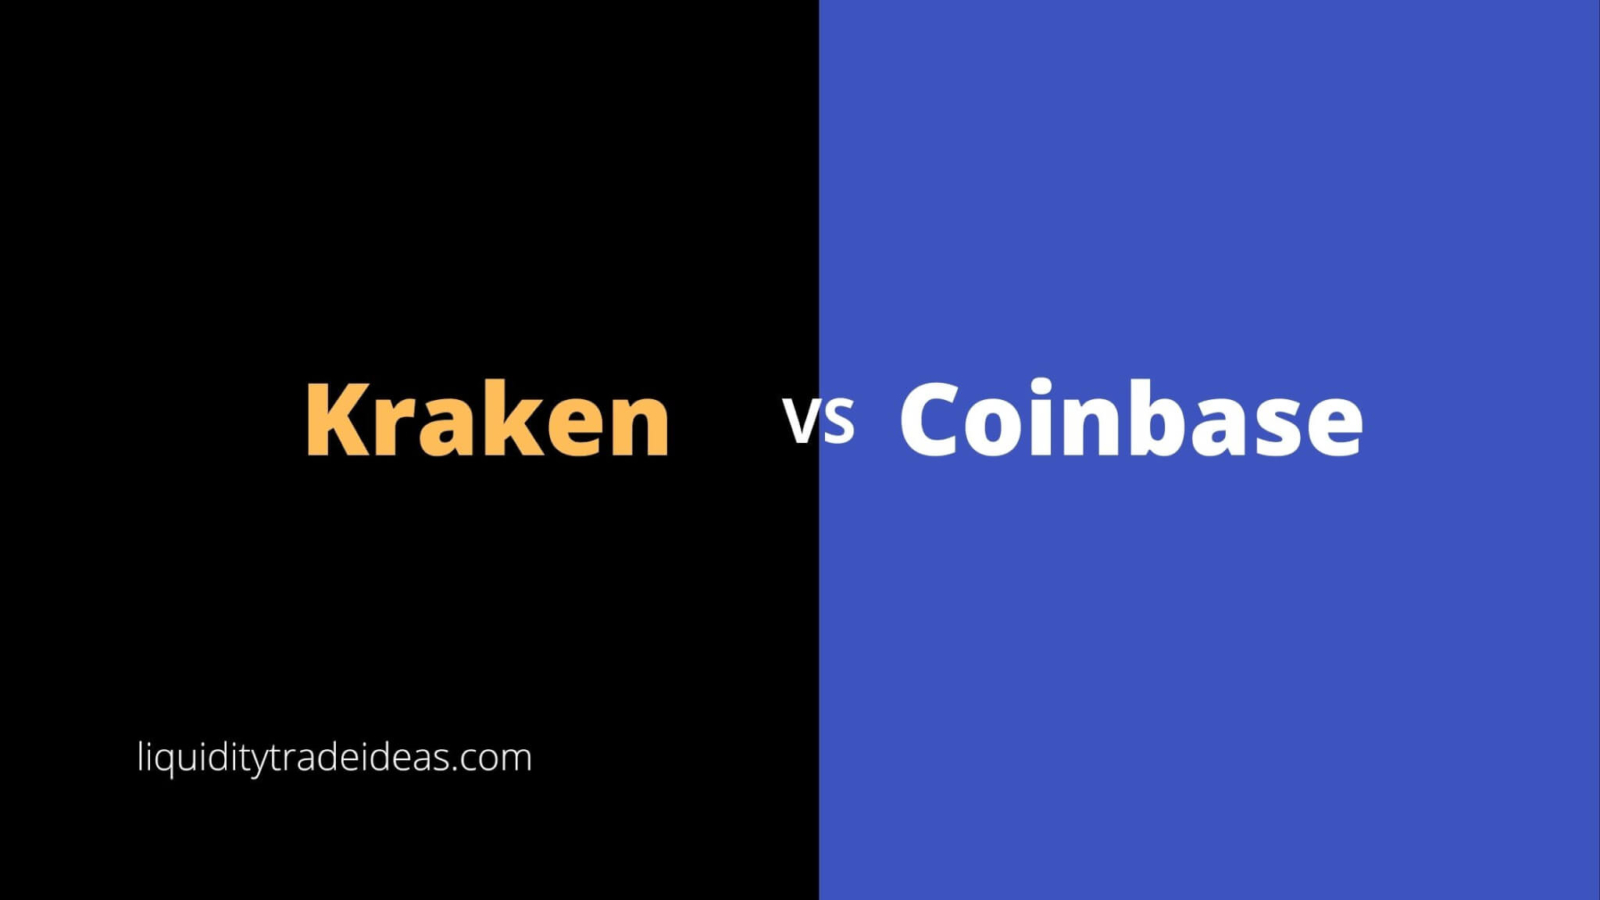 Kraken Fees vs Coinbase Fees: Who is Better?